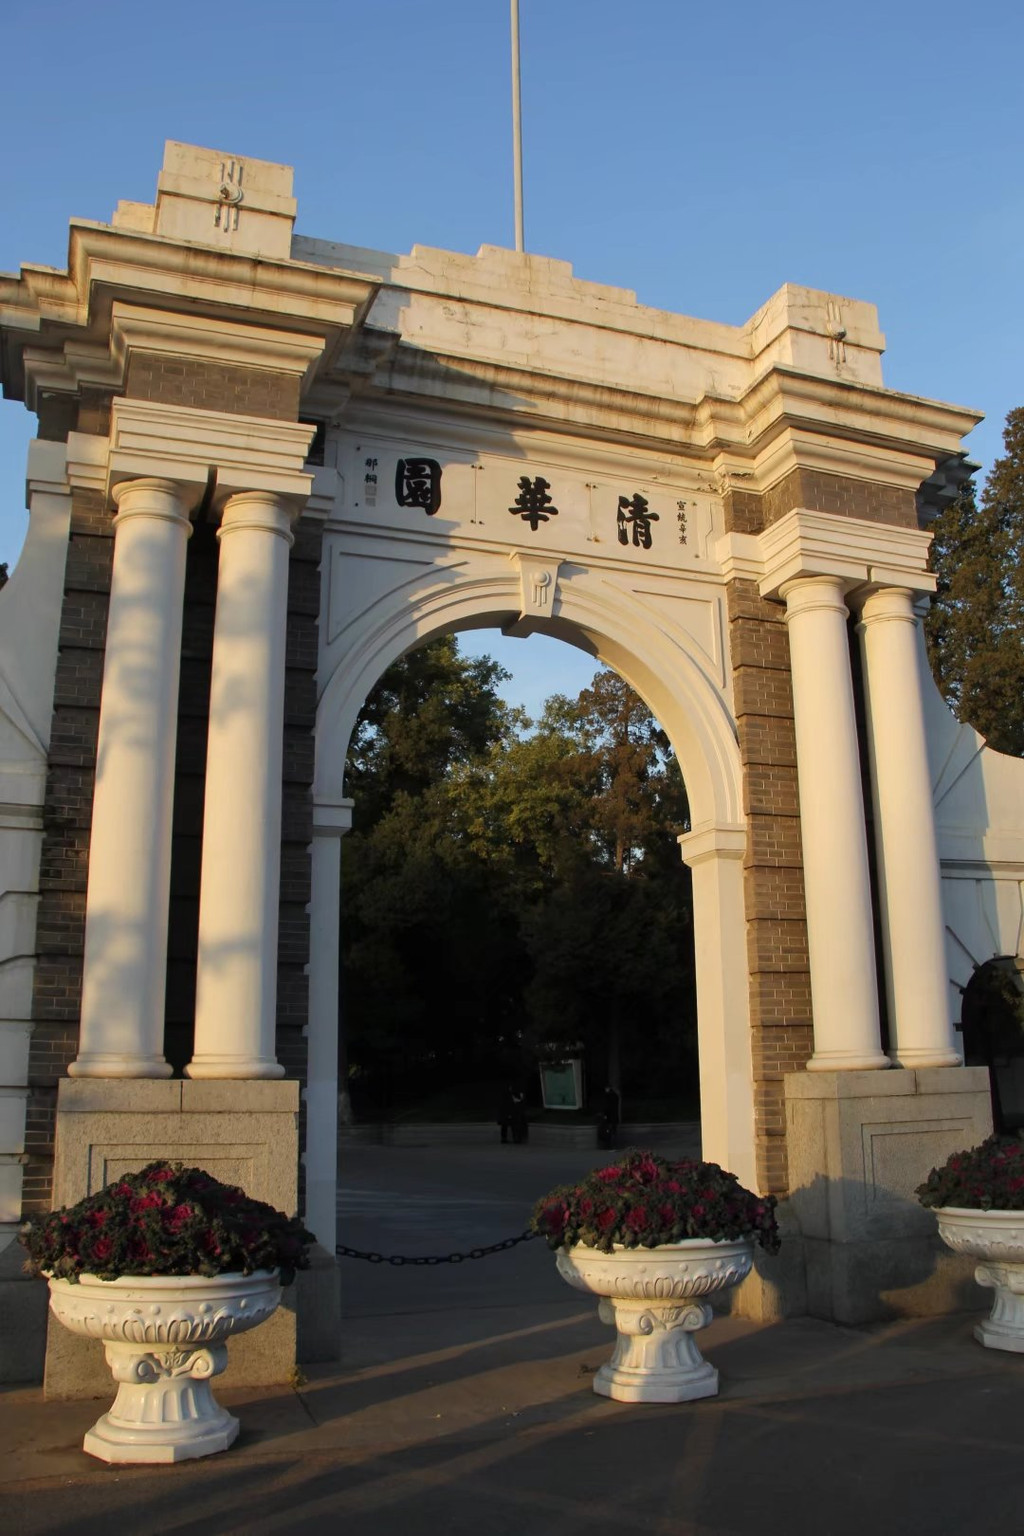 我想很多人对清华大学的印象就是这个校门吧,俗称"二校门".